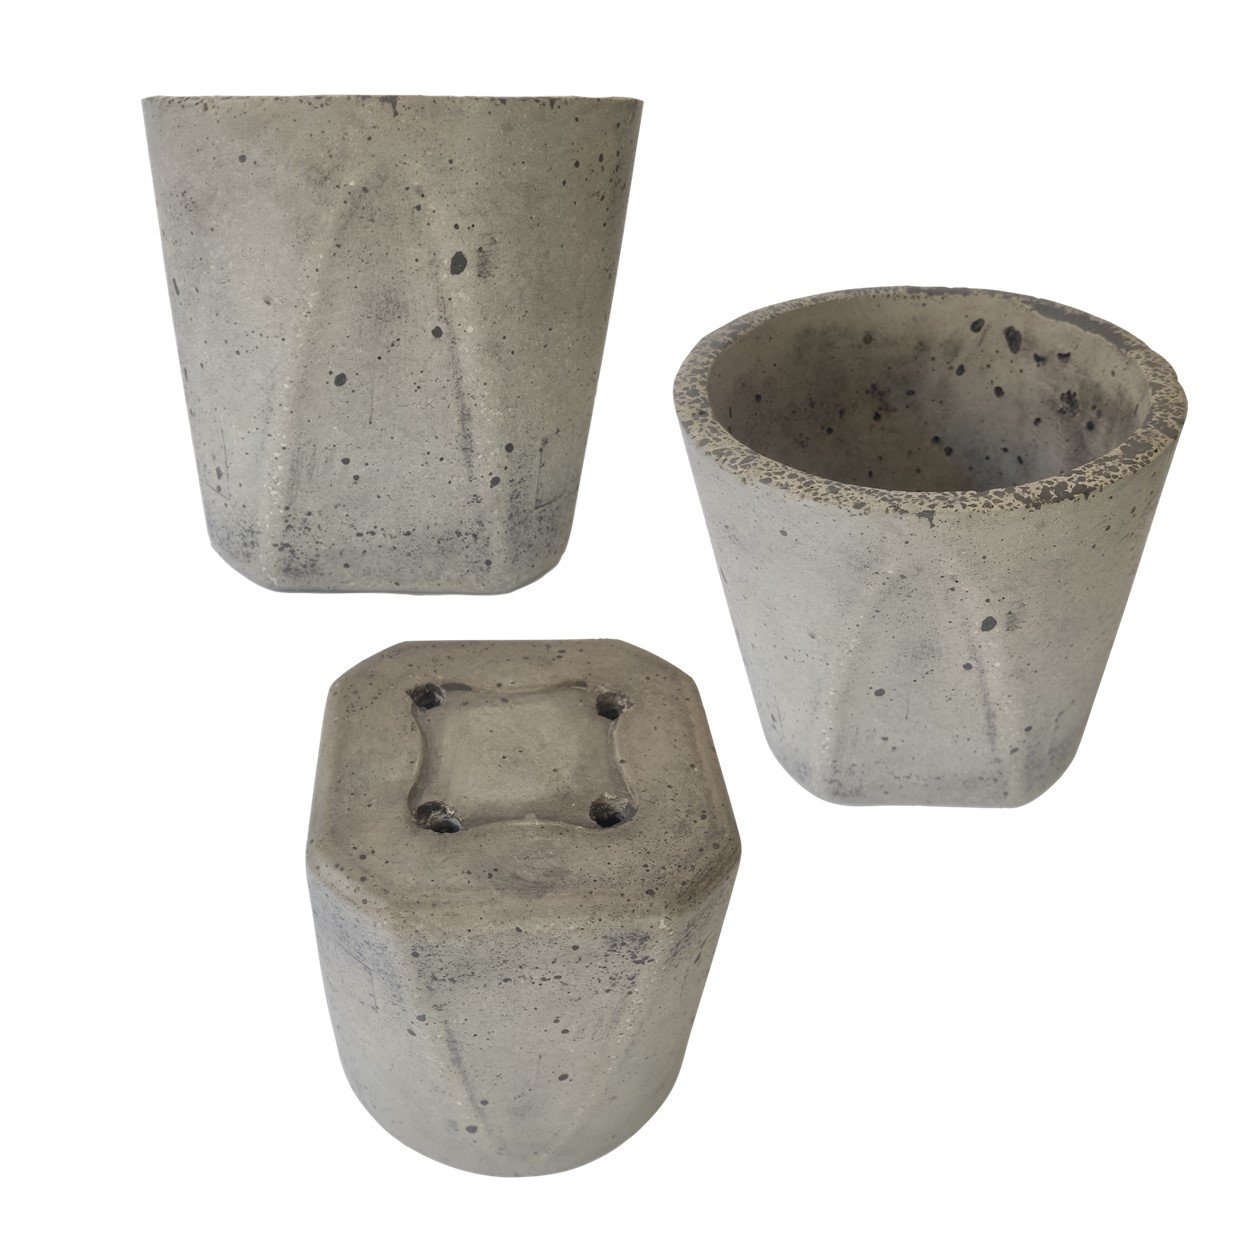 Vaso pote (19x17 cm) de cimento leve para planta:1- Preto